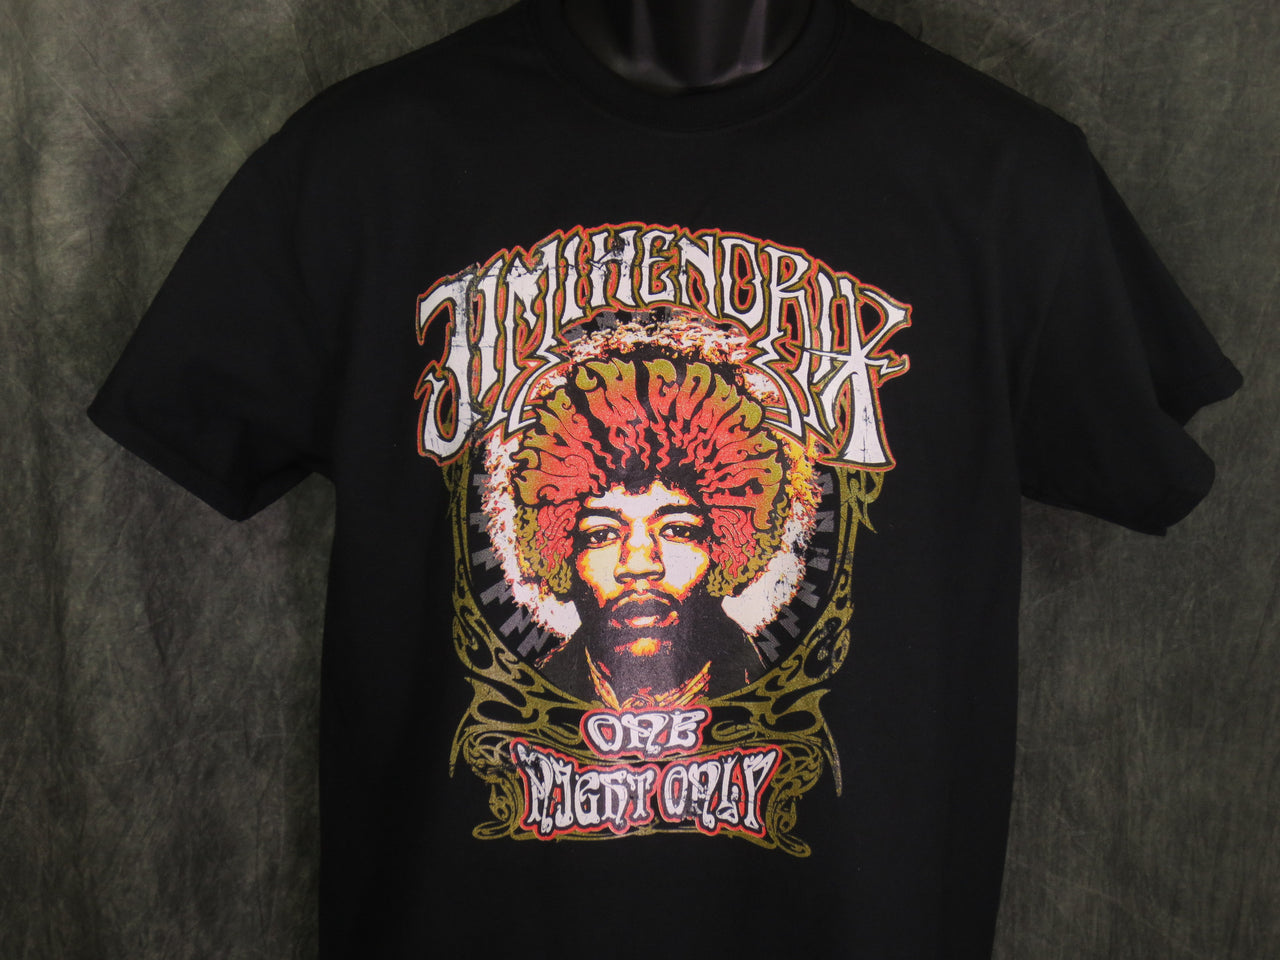 Jimi Hendrix One Night Only tshirt - TshirtNow.net - 2